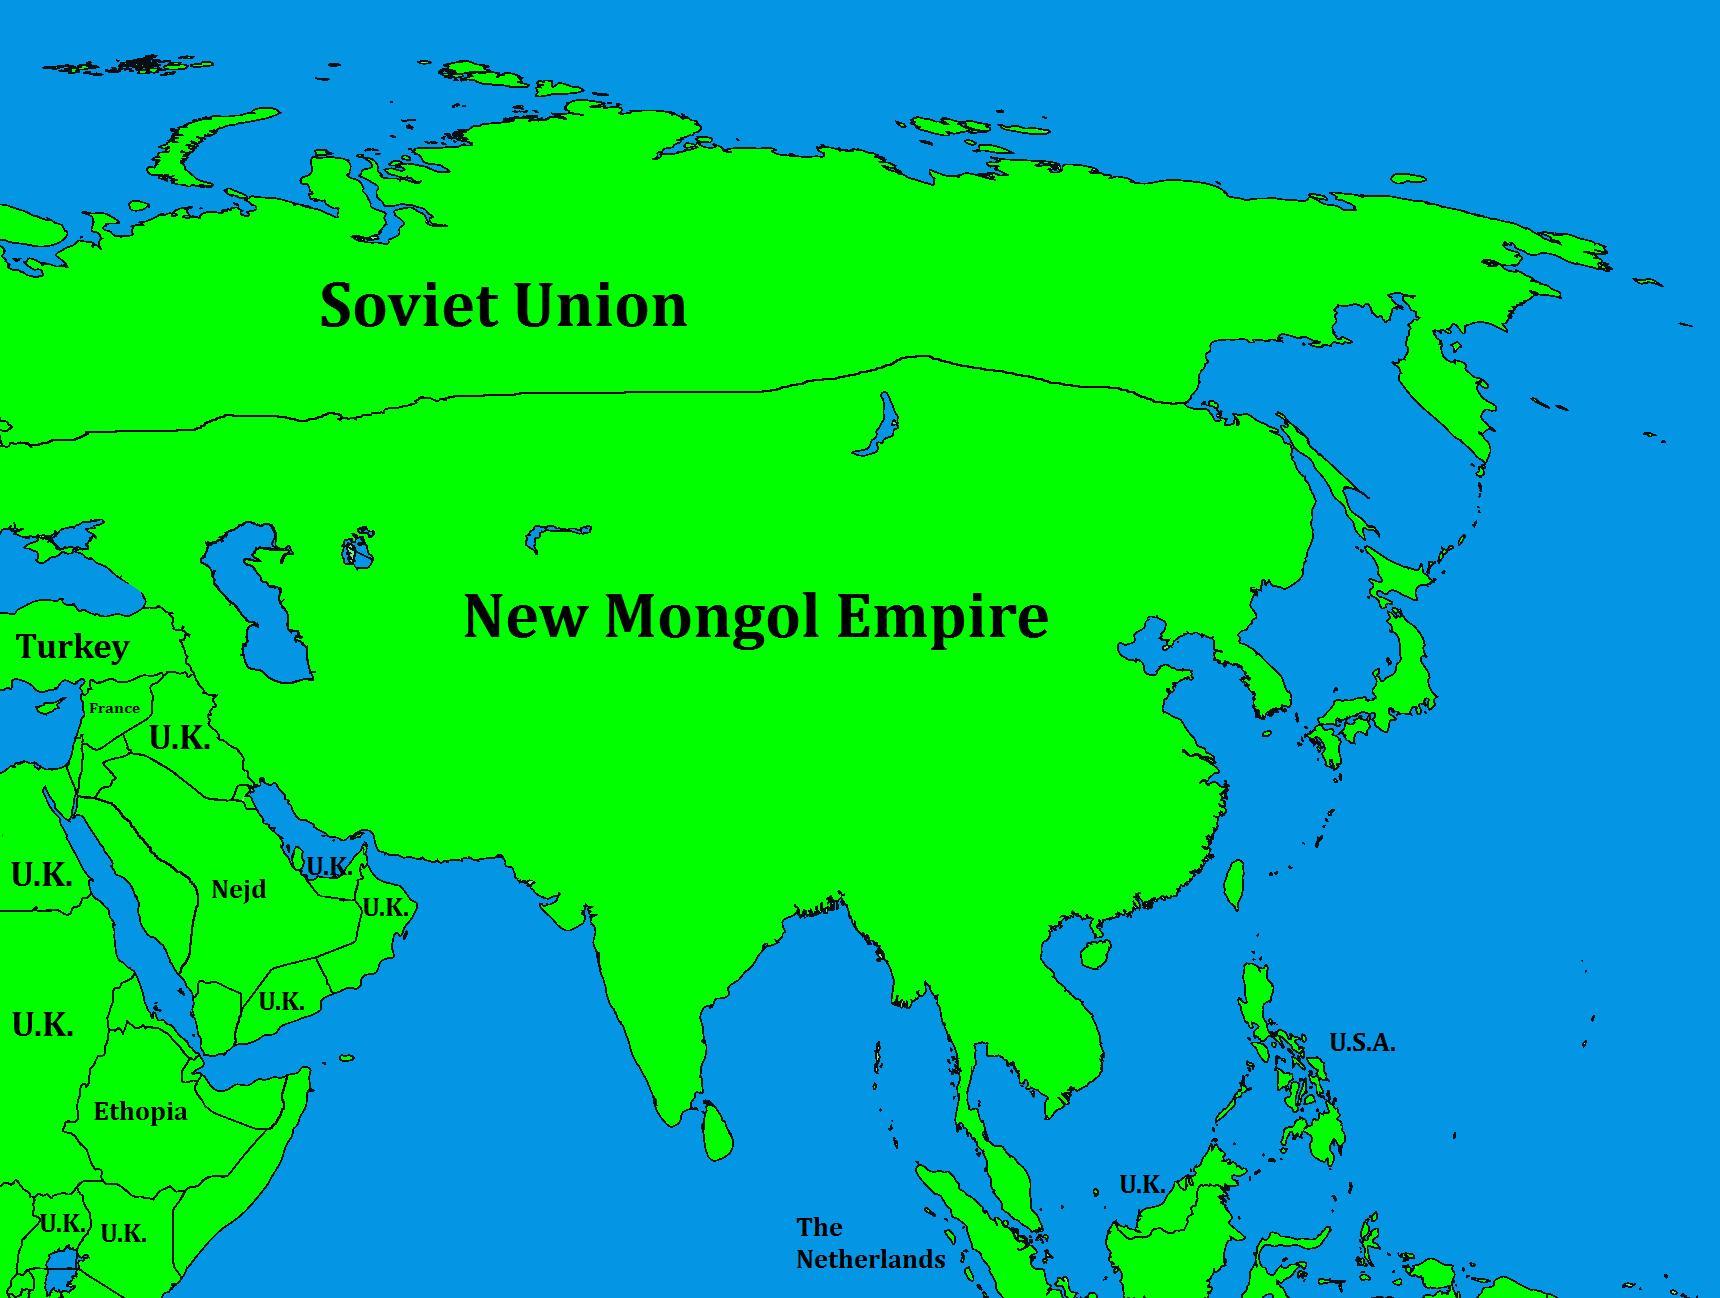 mongol empire moneymoney